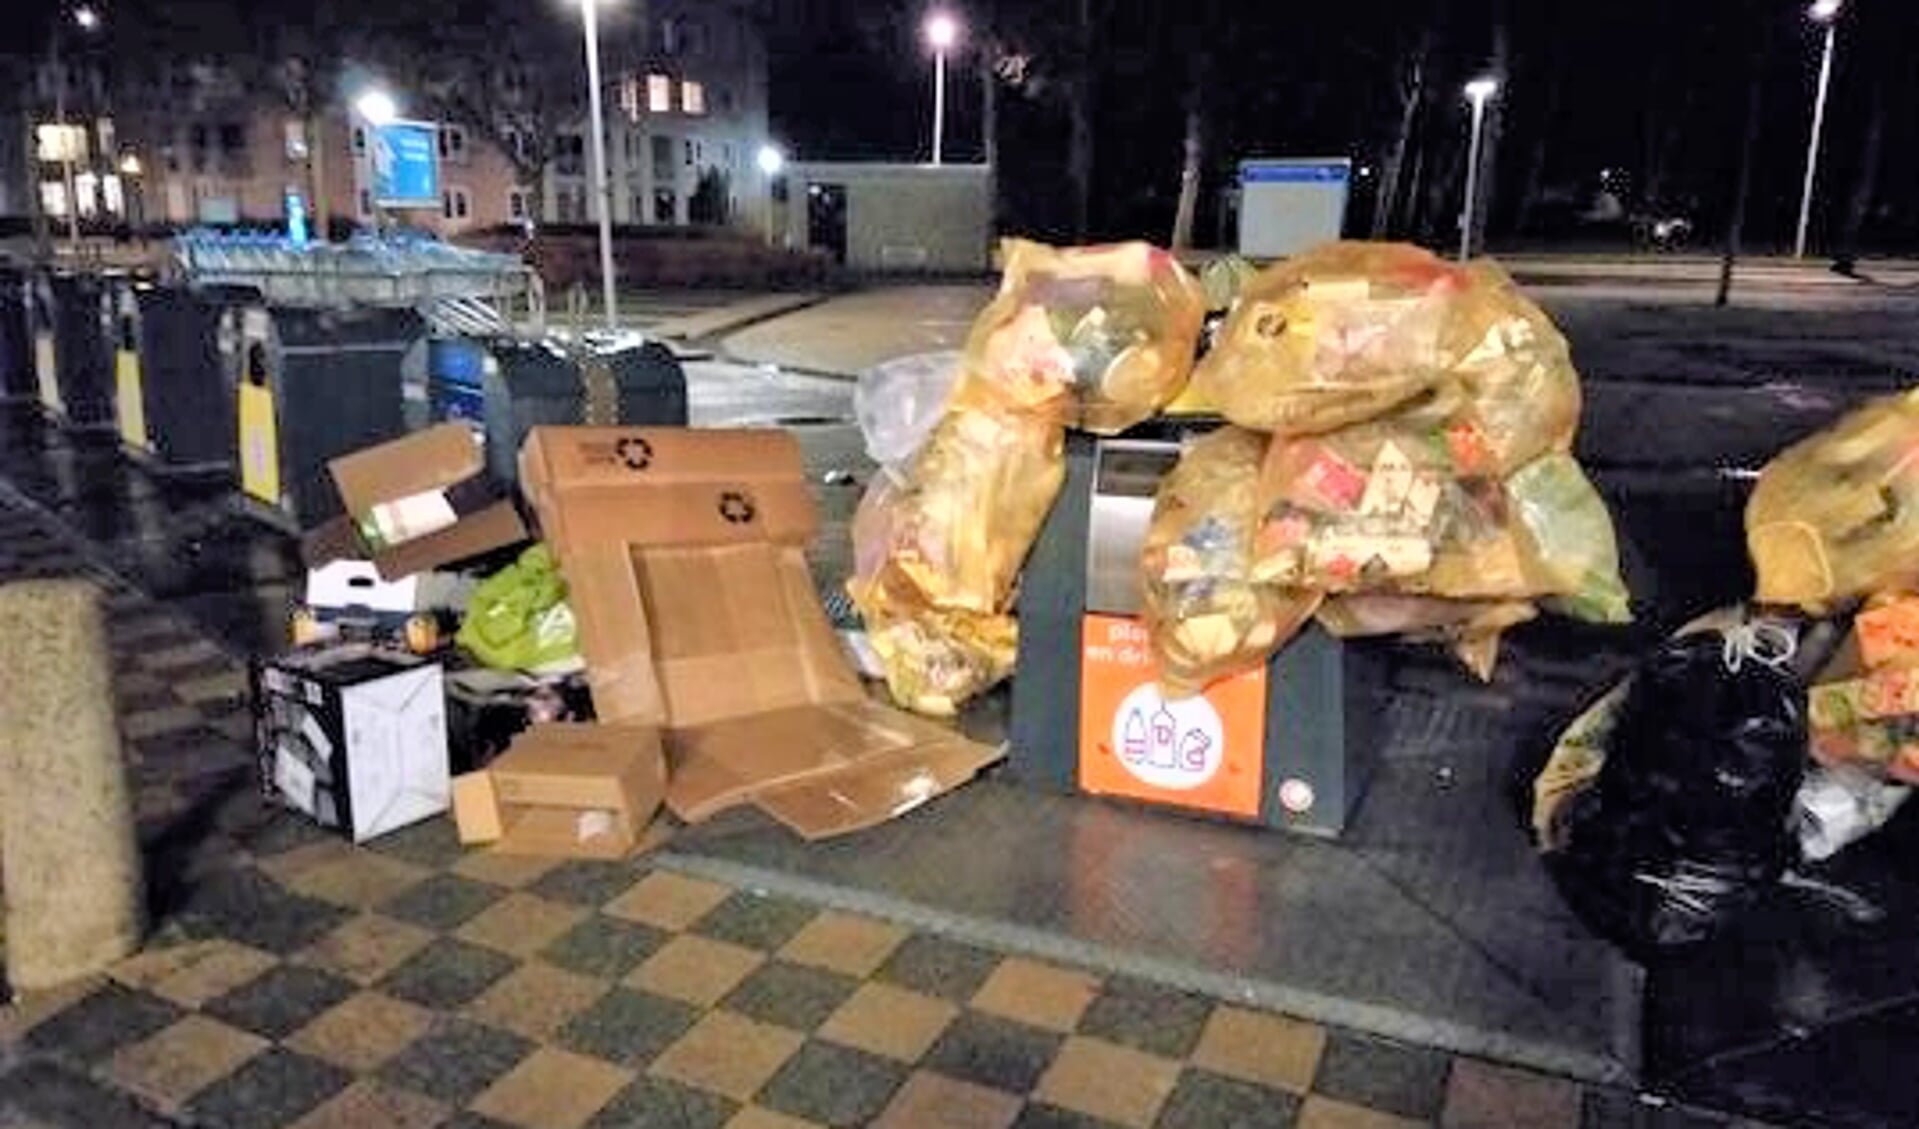 • Stapels zakken bij de afvalcontainers bij winkelcentrum Wilgendonk.